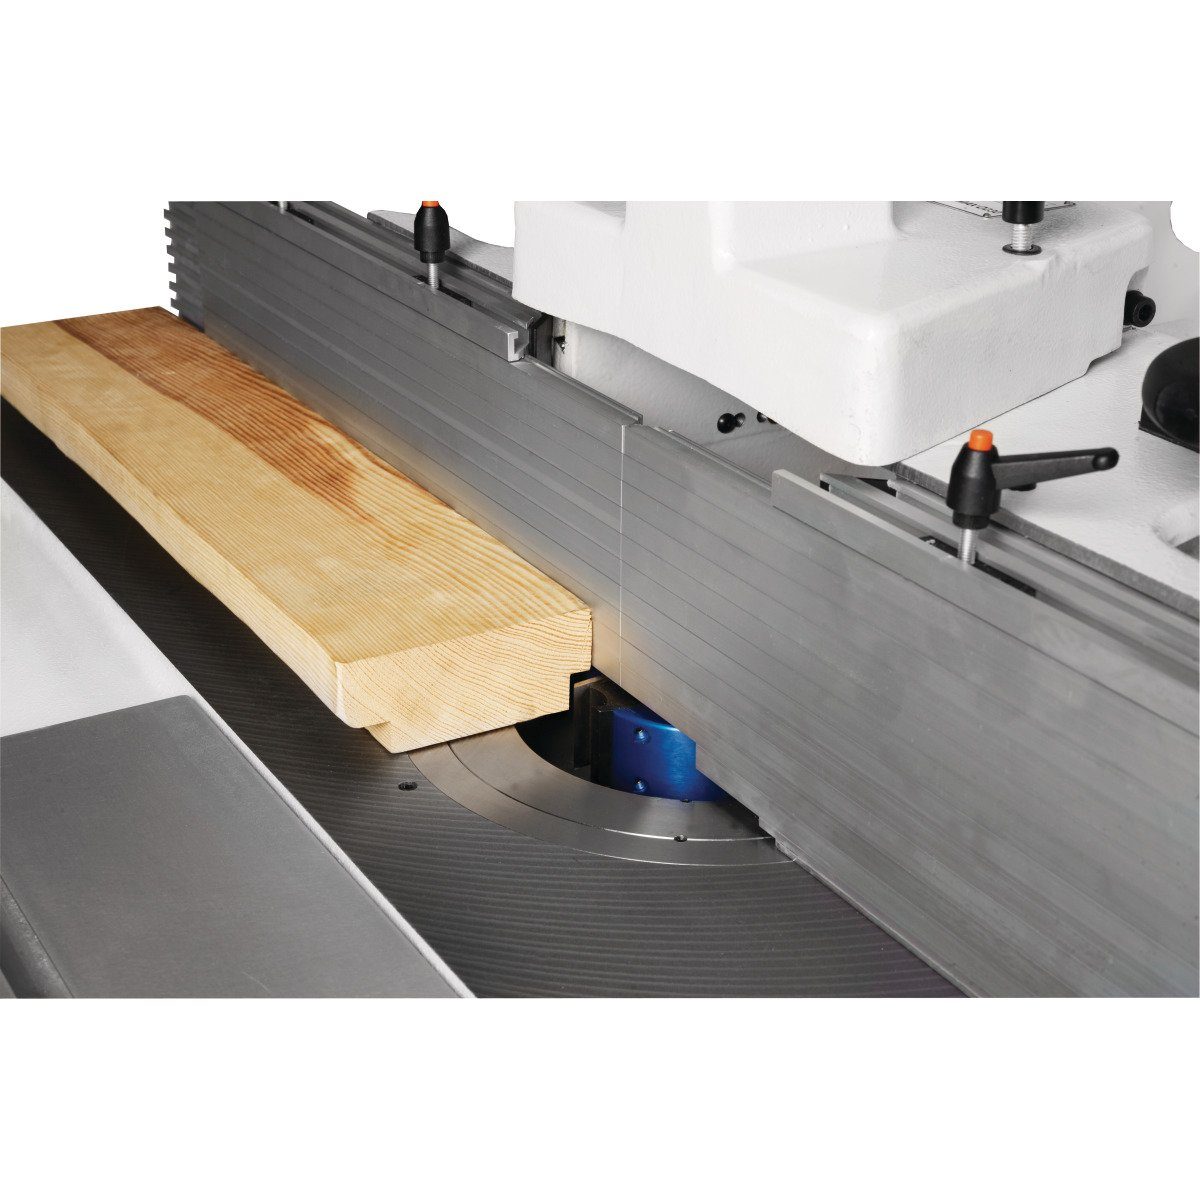 Tischfräse Holzkraft Tischfräse Holzkraft t 5502049 45c minimax LL,